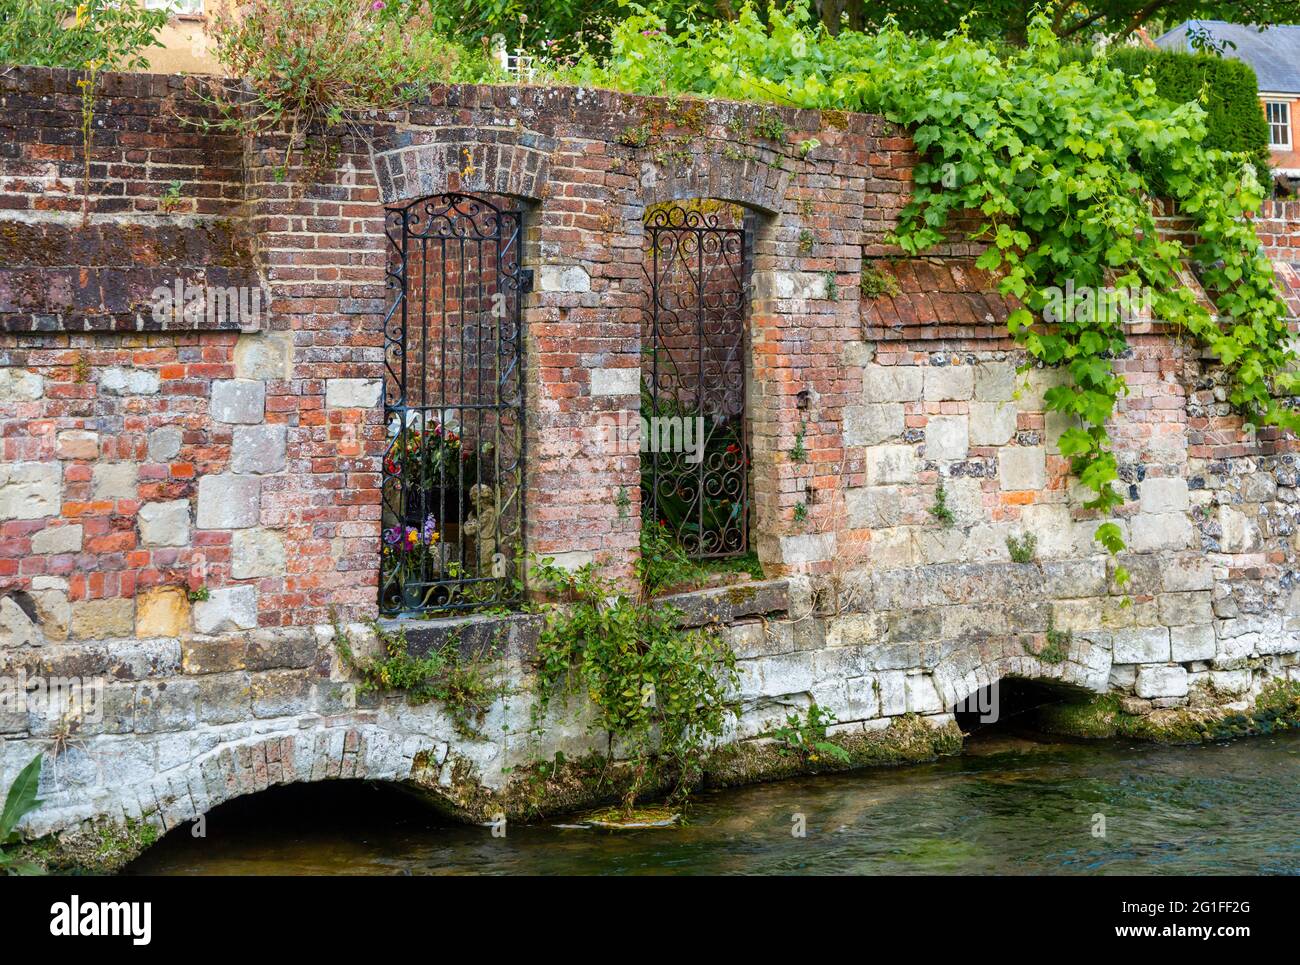 Cancelli in ferro battuto in un vecchio muro di mattoni rossi che conduce dai giardini al fiume Itchen nei Weirs, Winchester, Hampshire Foto Stock